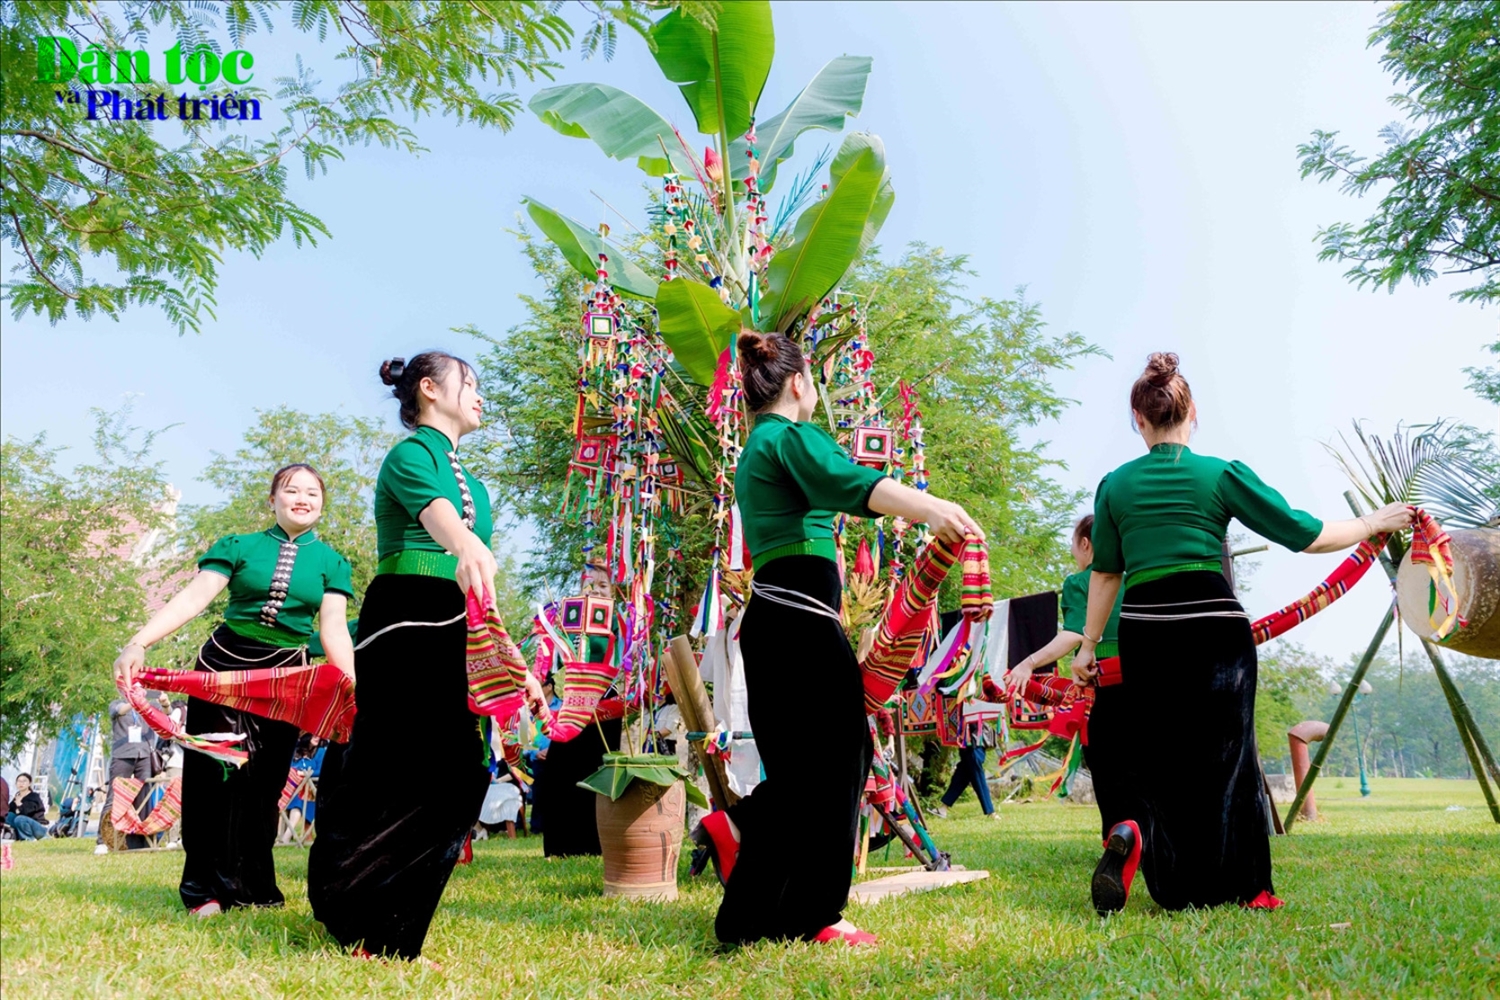 (Bài Thời sự) Lễ hội Kin Pang, nét đẹp văn hóa của dân tộc Thái đen Lai Châu 10